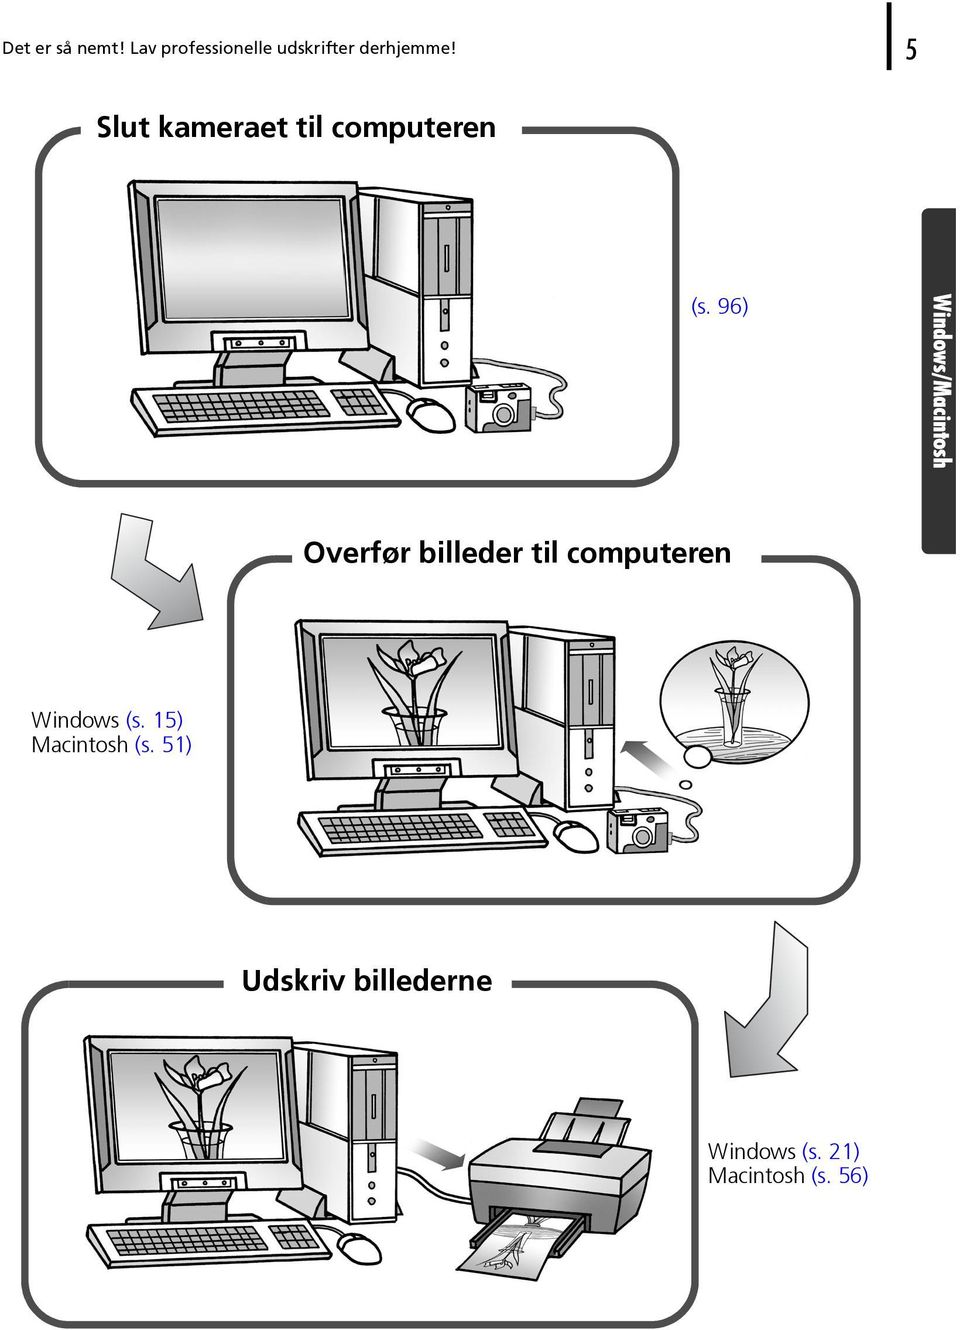 96) Windows/Macintosh Overfør billeder til computeren